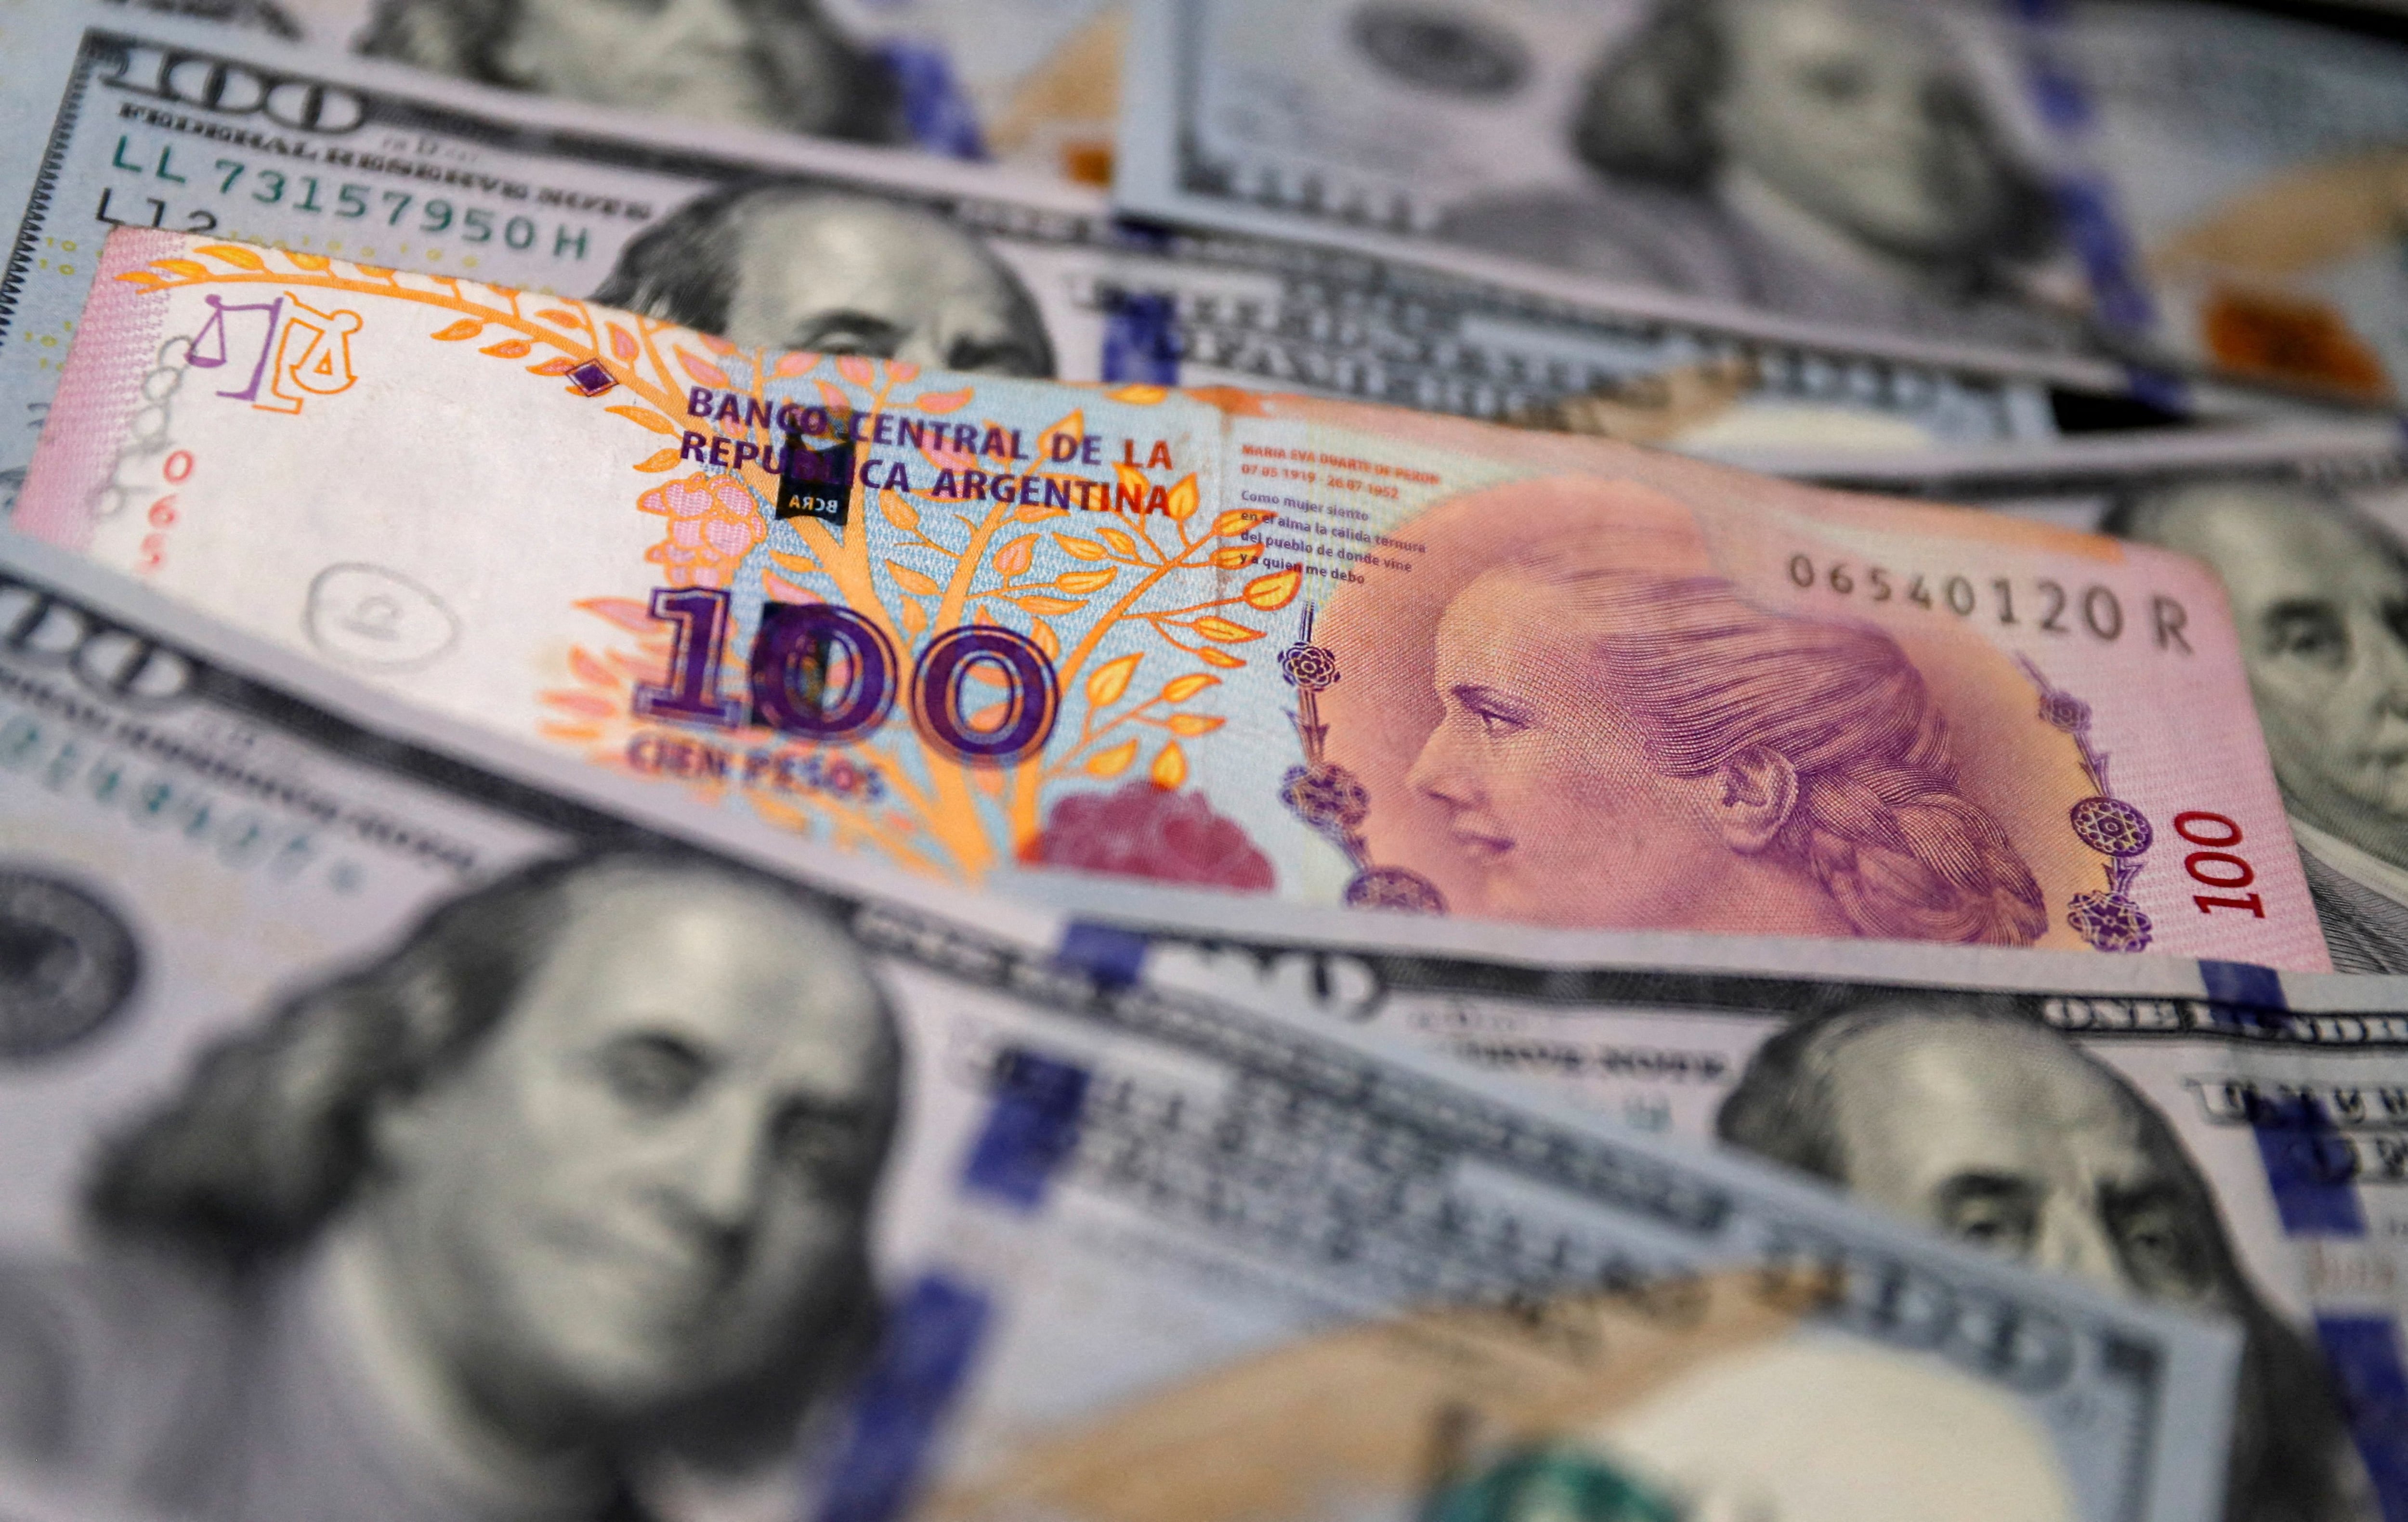 El dólar libre rozó los 800 pesos a mediados de agosto.